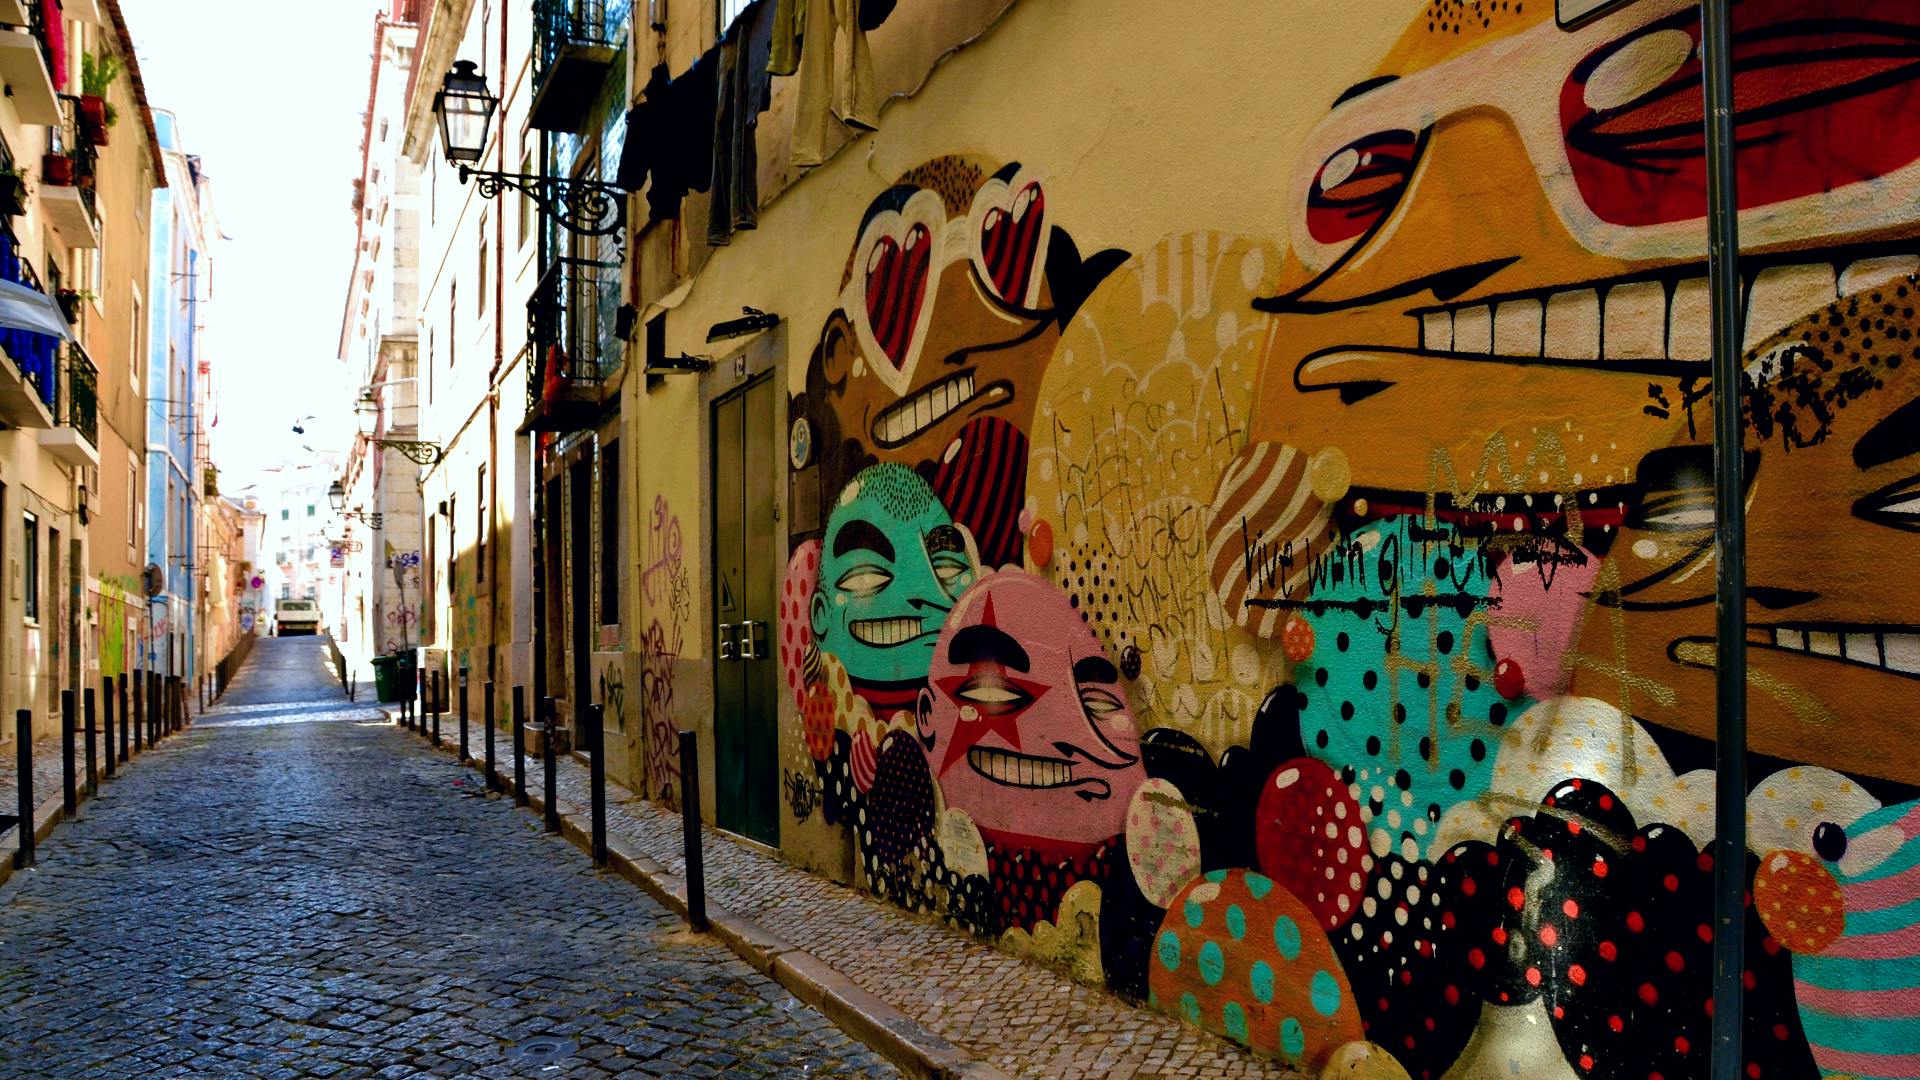 Discovery Walk autoguiado en el Bairro Alto y Bica de Lisboa: figuras divertidas y vistas fabulosas